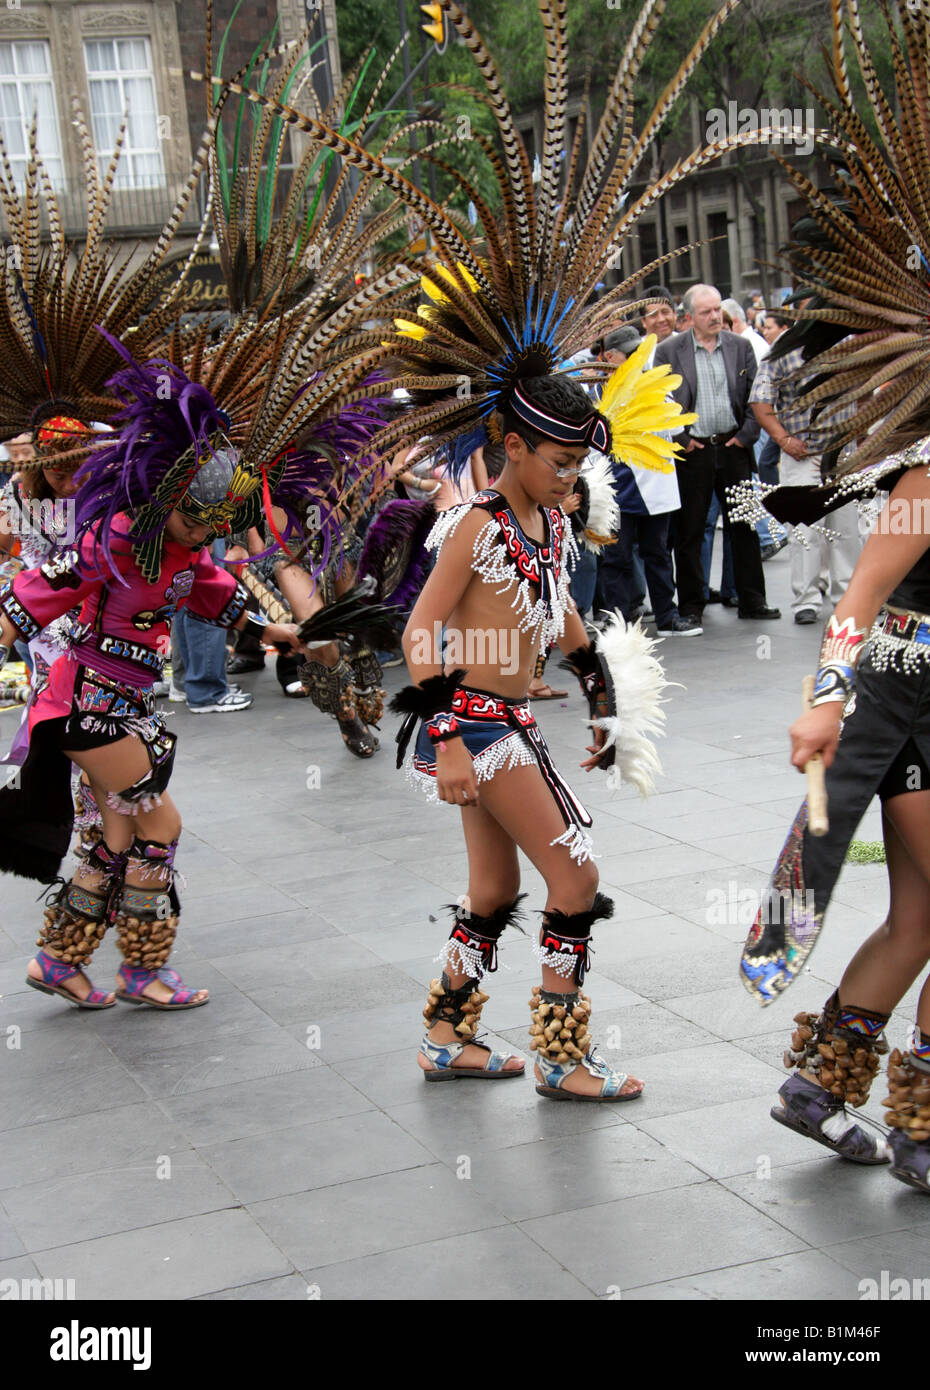 Young Mexican Dancers in Aztec Costume, Zocalo Square, Plaza de la Constitucion, Mexico City, Mexico Stock Photo